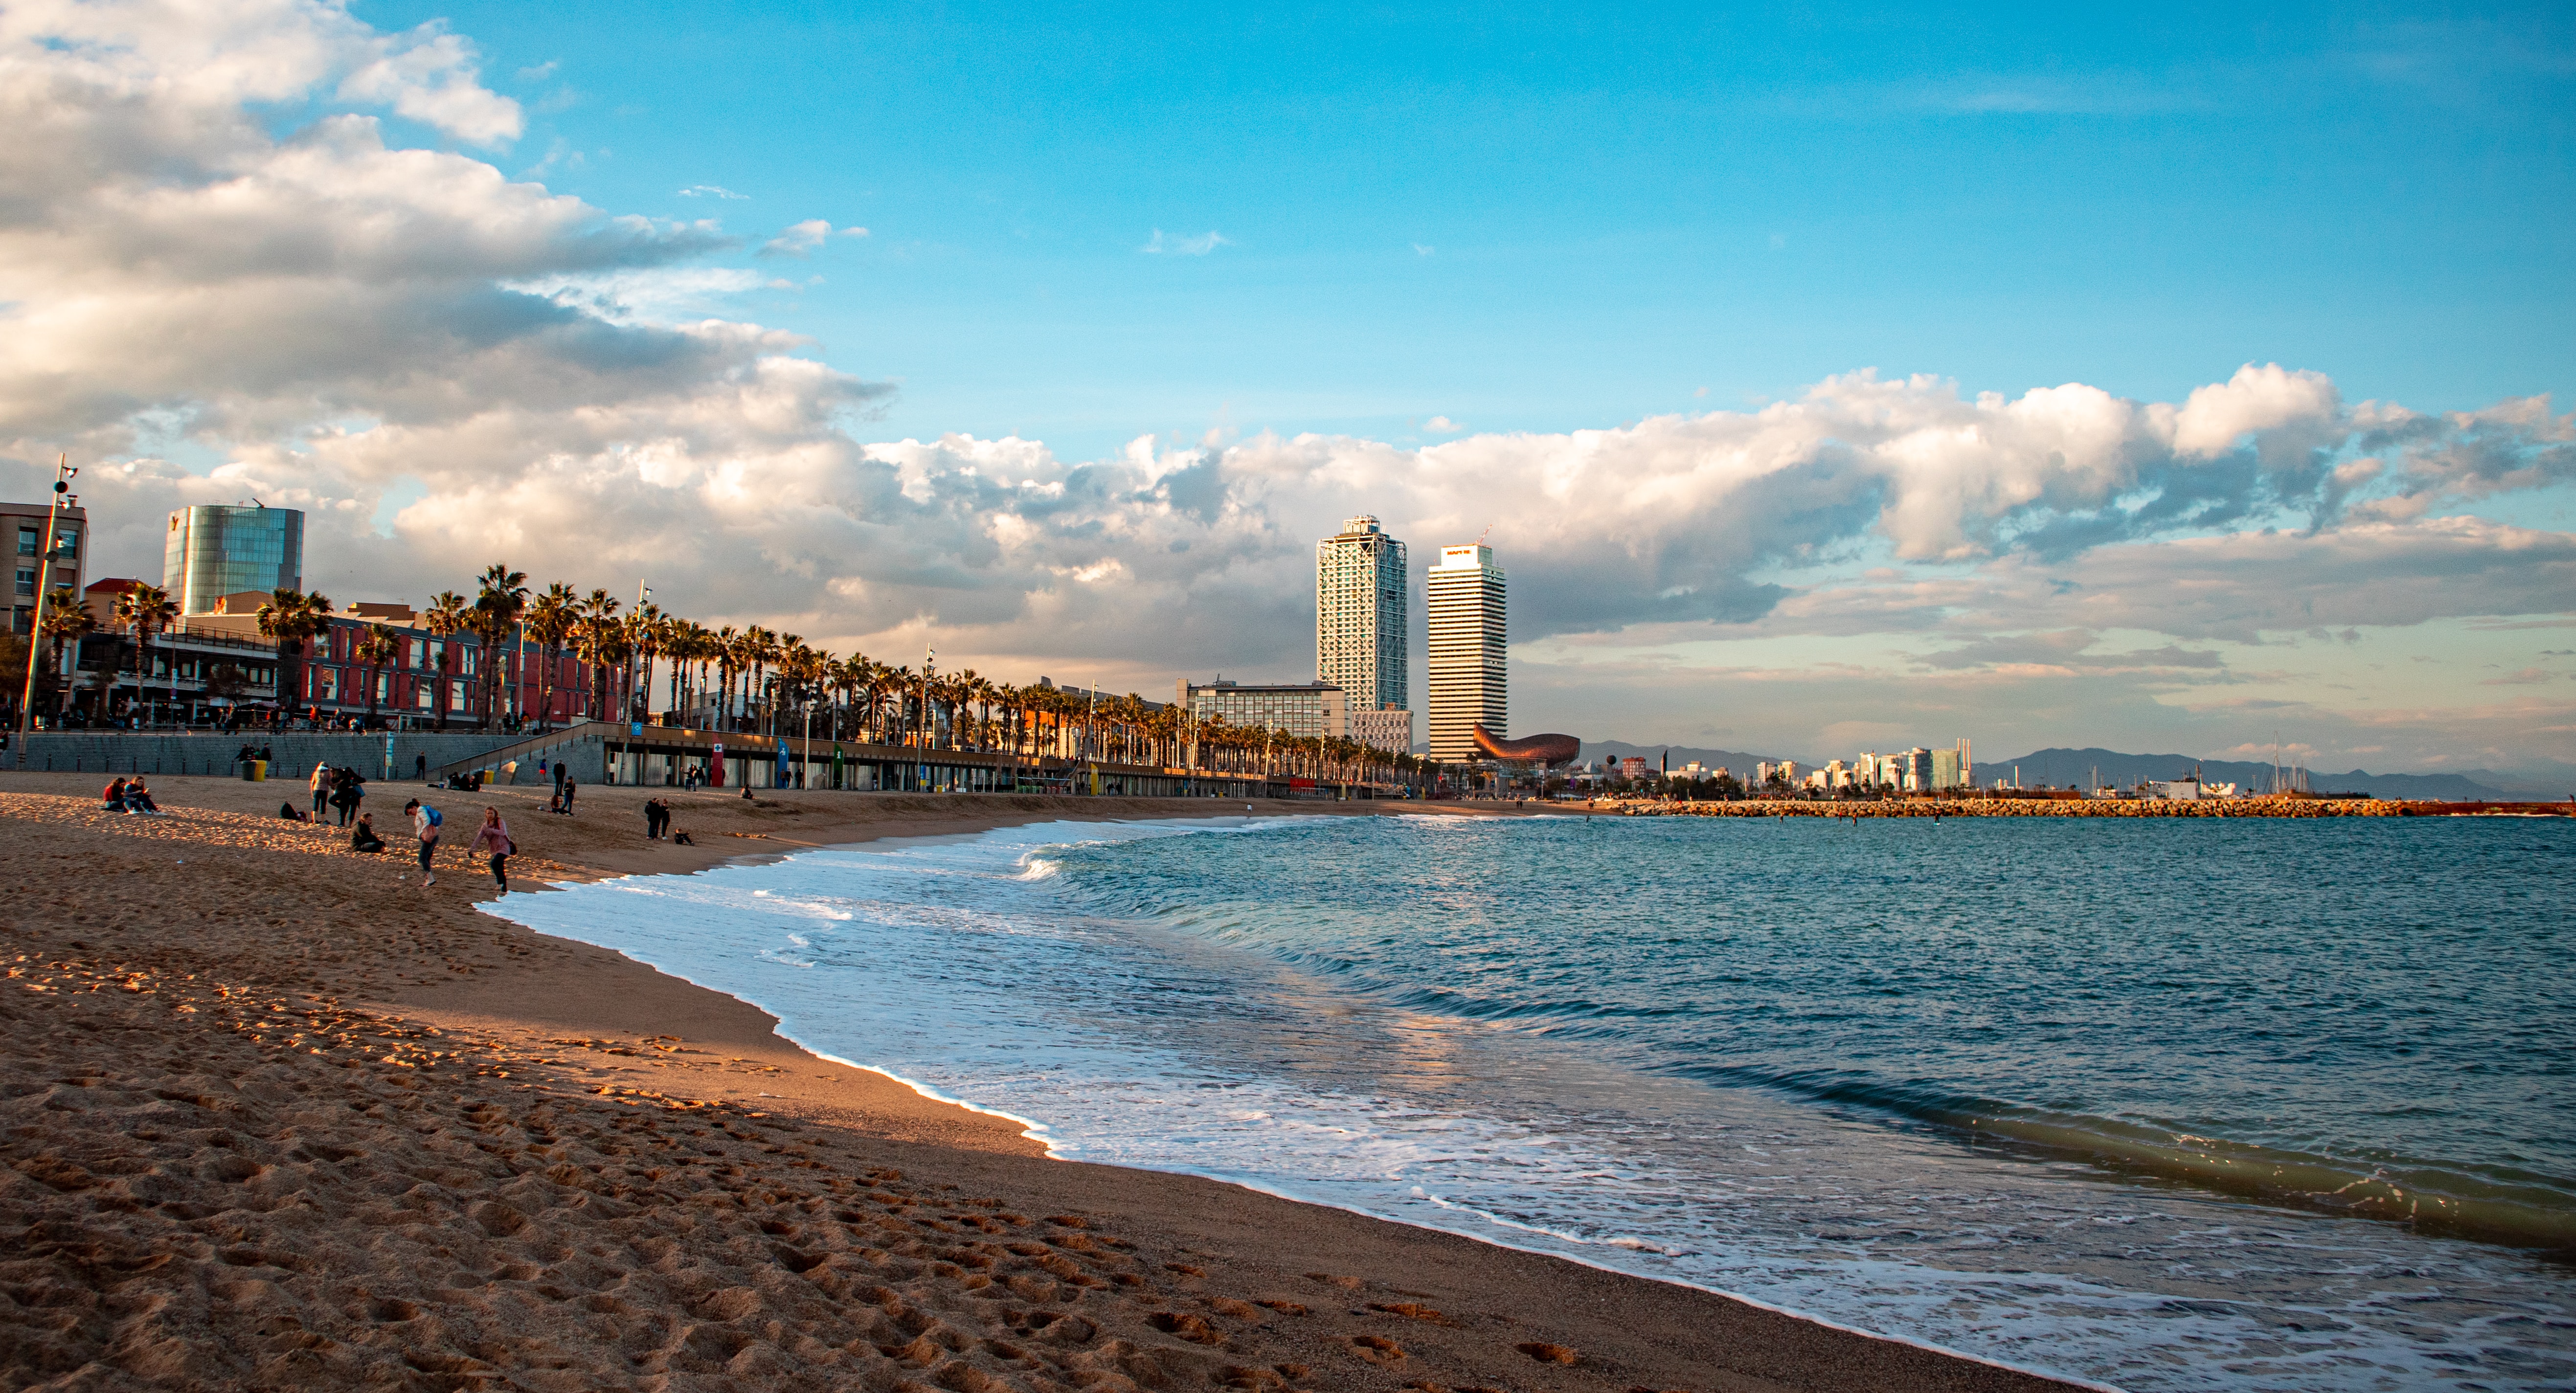 Imagen de la playa de Barcelona, tomada por Chan Lee para Unsplash